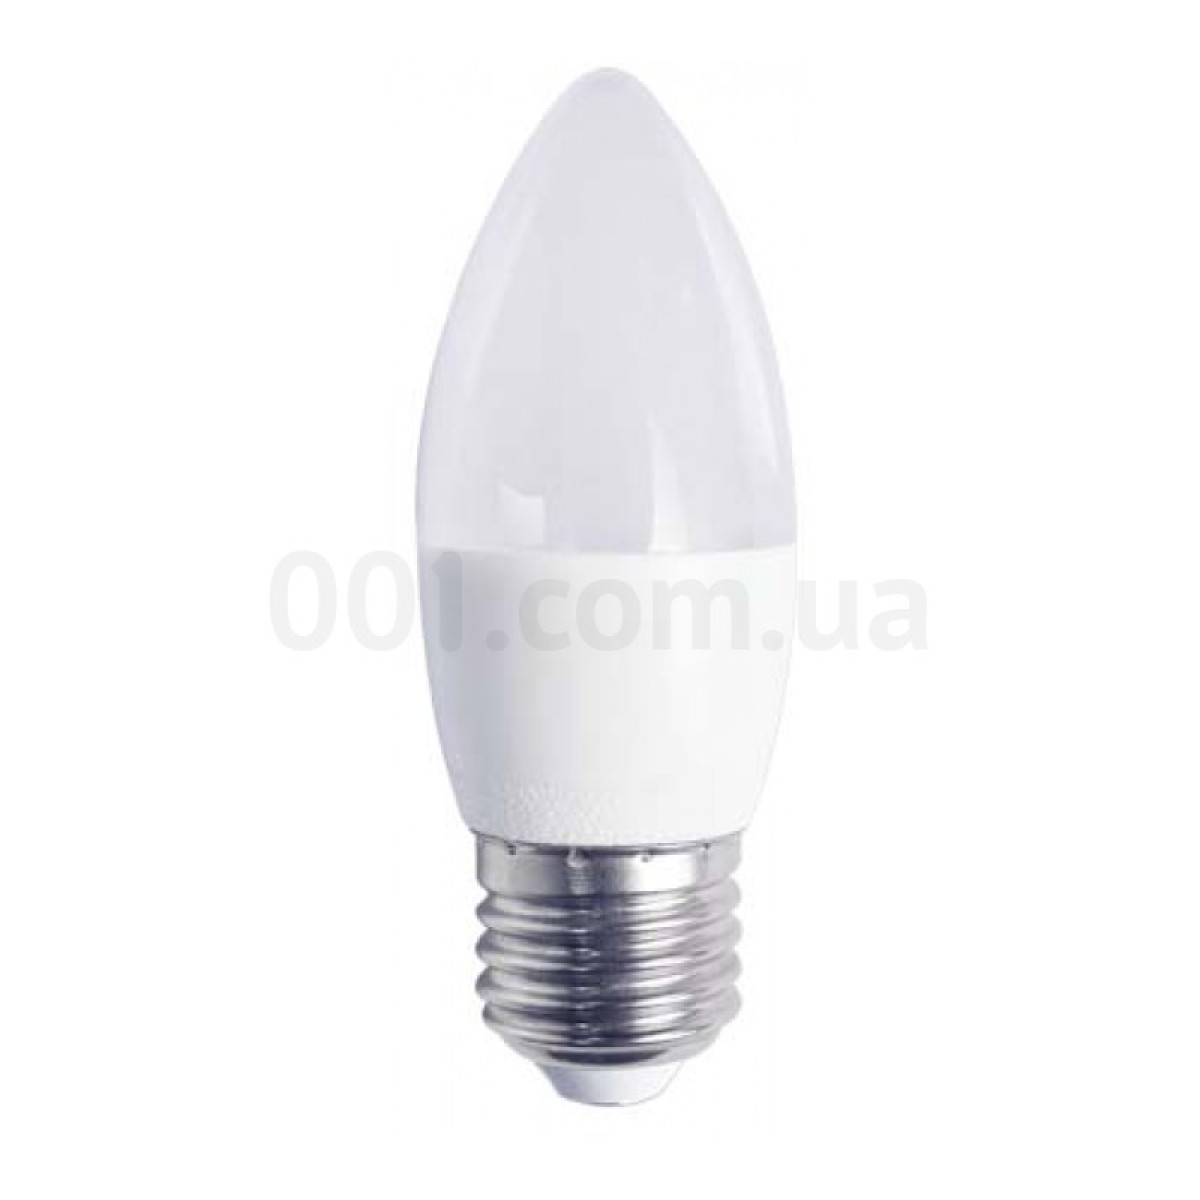 Світлодіодна лампа LB-737 C37 (свічка) 6Вт 2700K E27, Feron 98_98.jpg